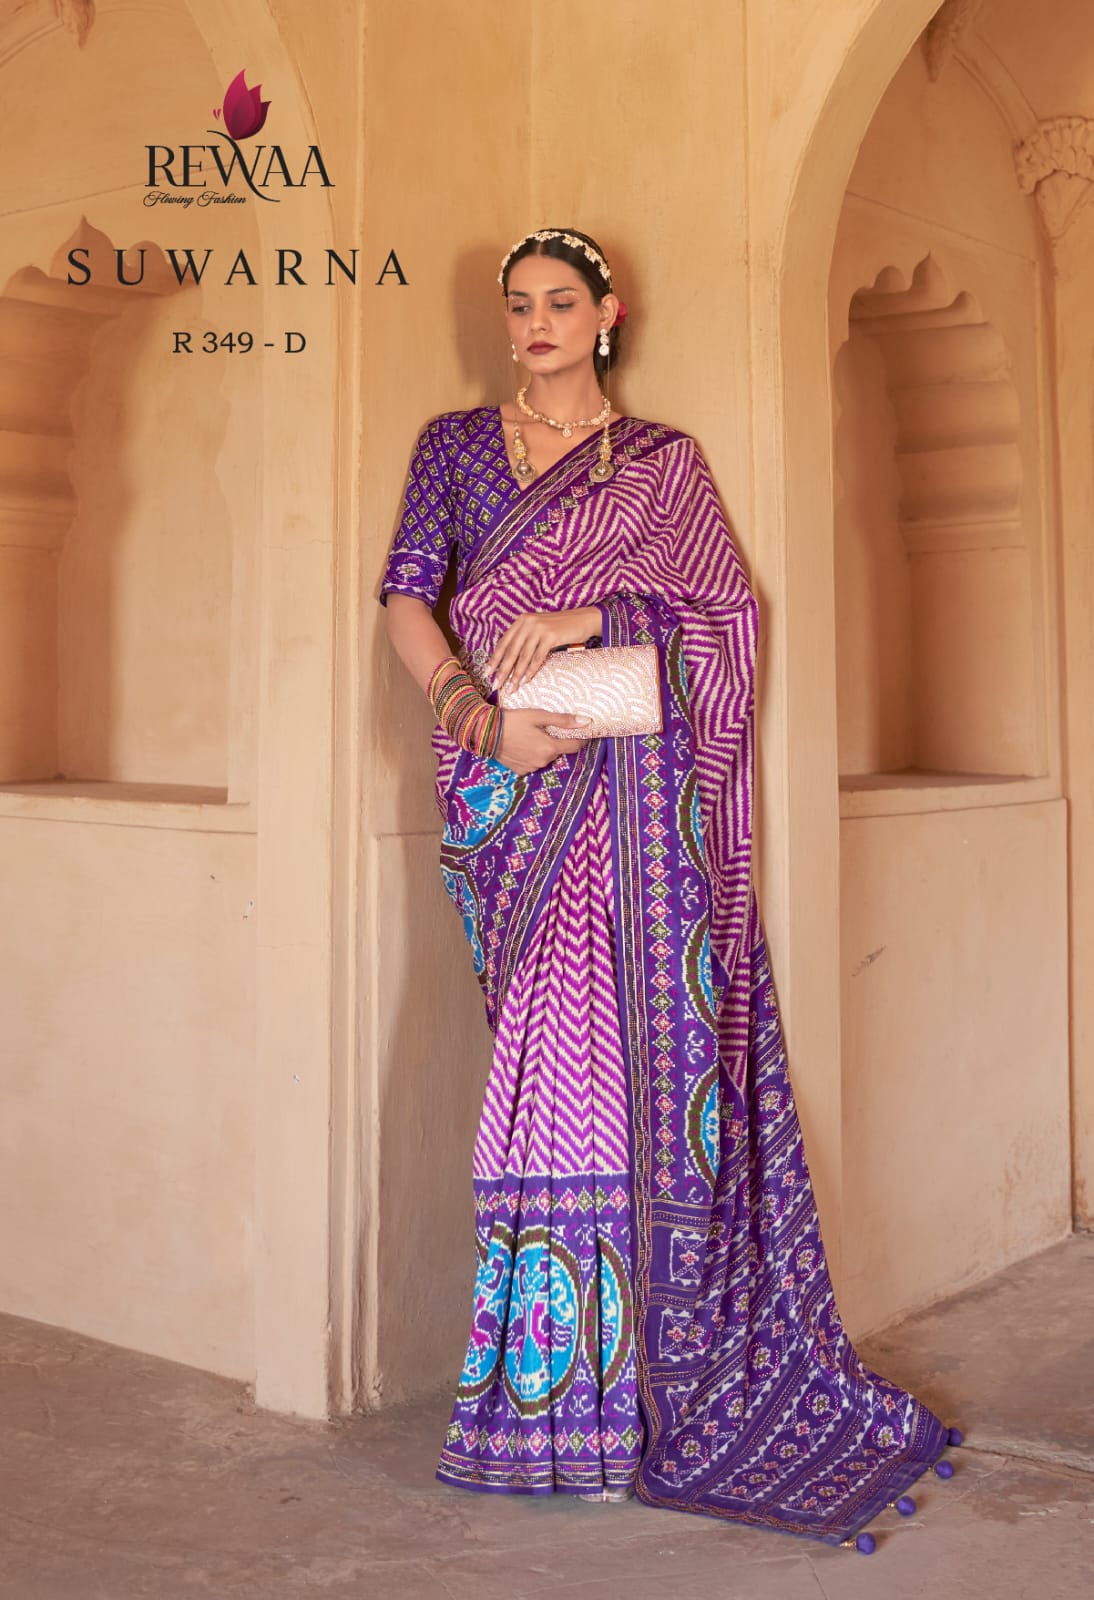 Rewaa Suwarna collection 2